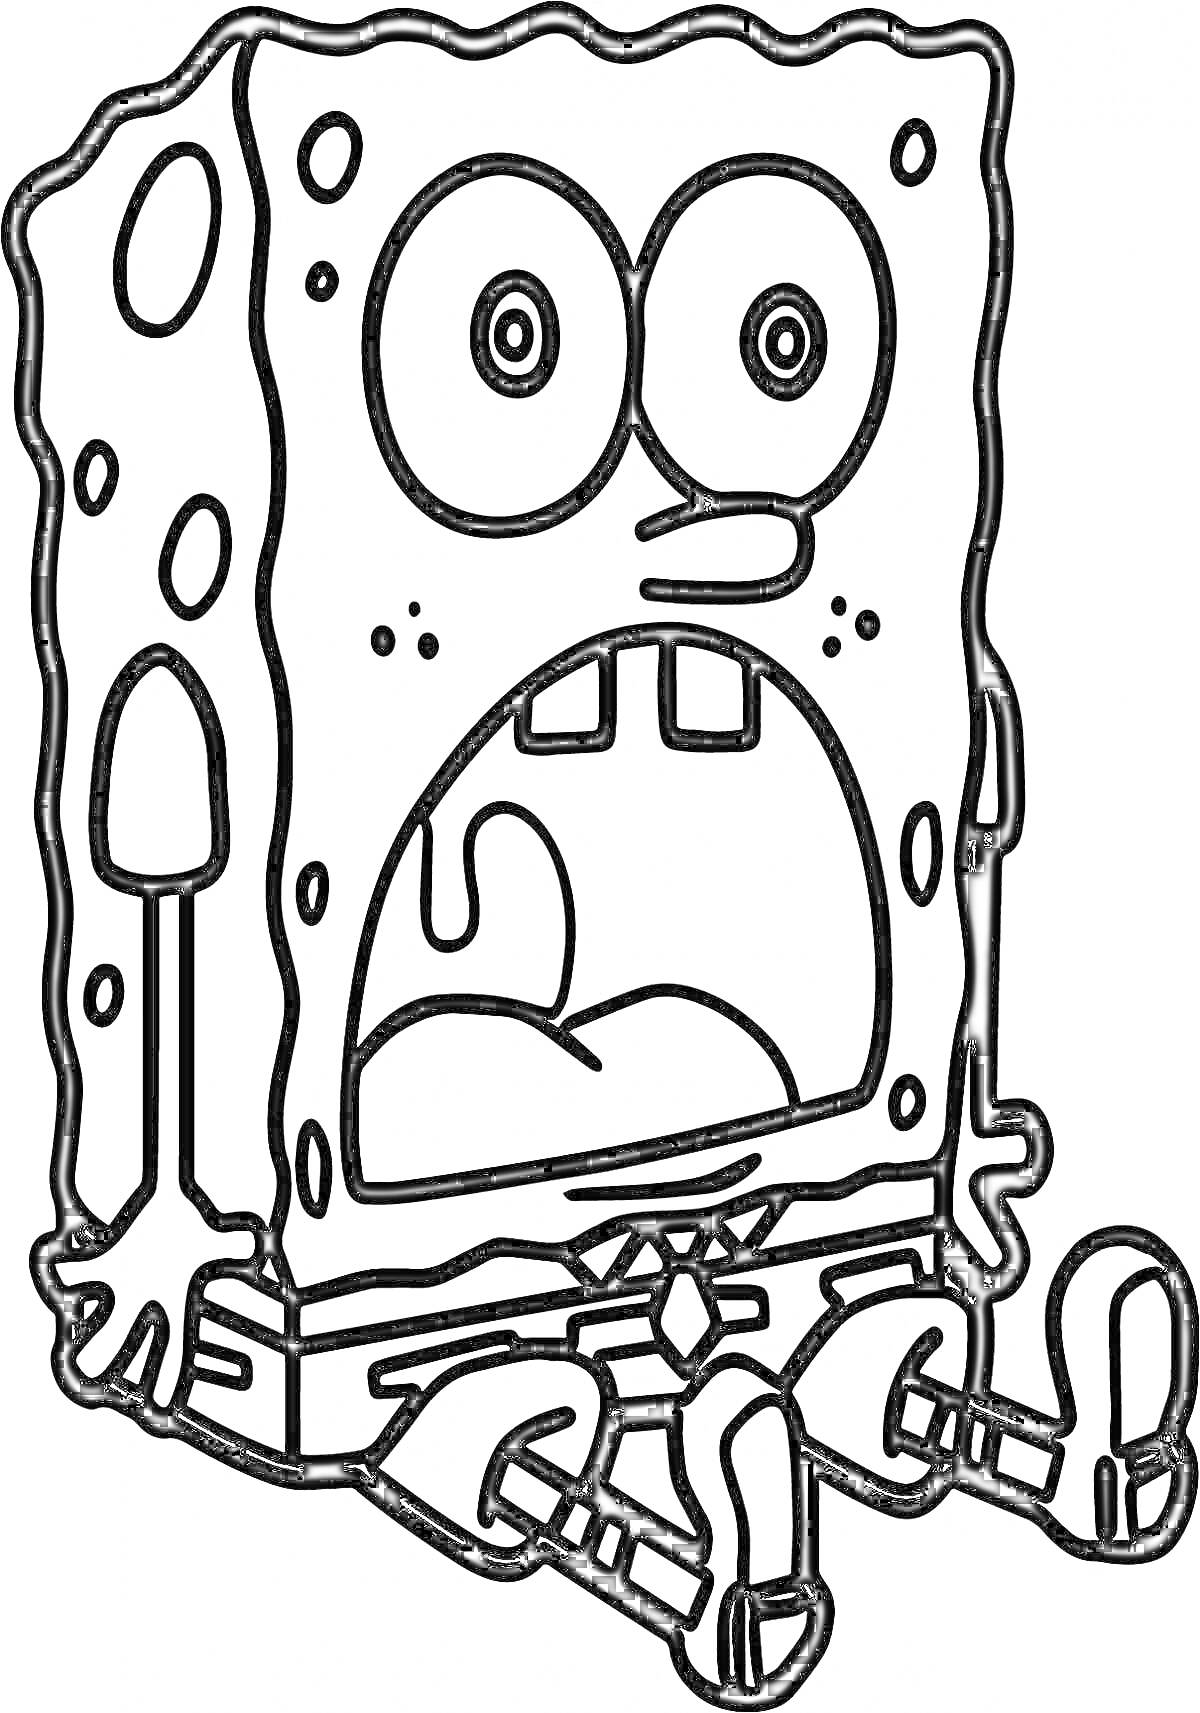 Раскраска Спанч Боб с удивленным выражением лица, сидящий на земле